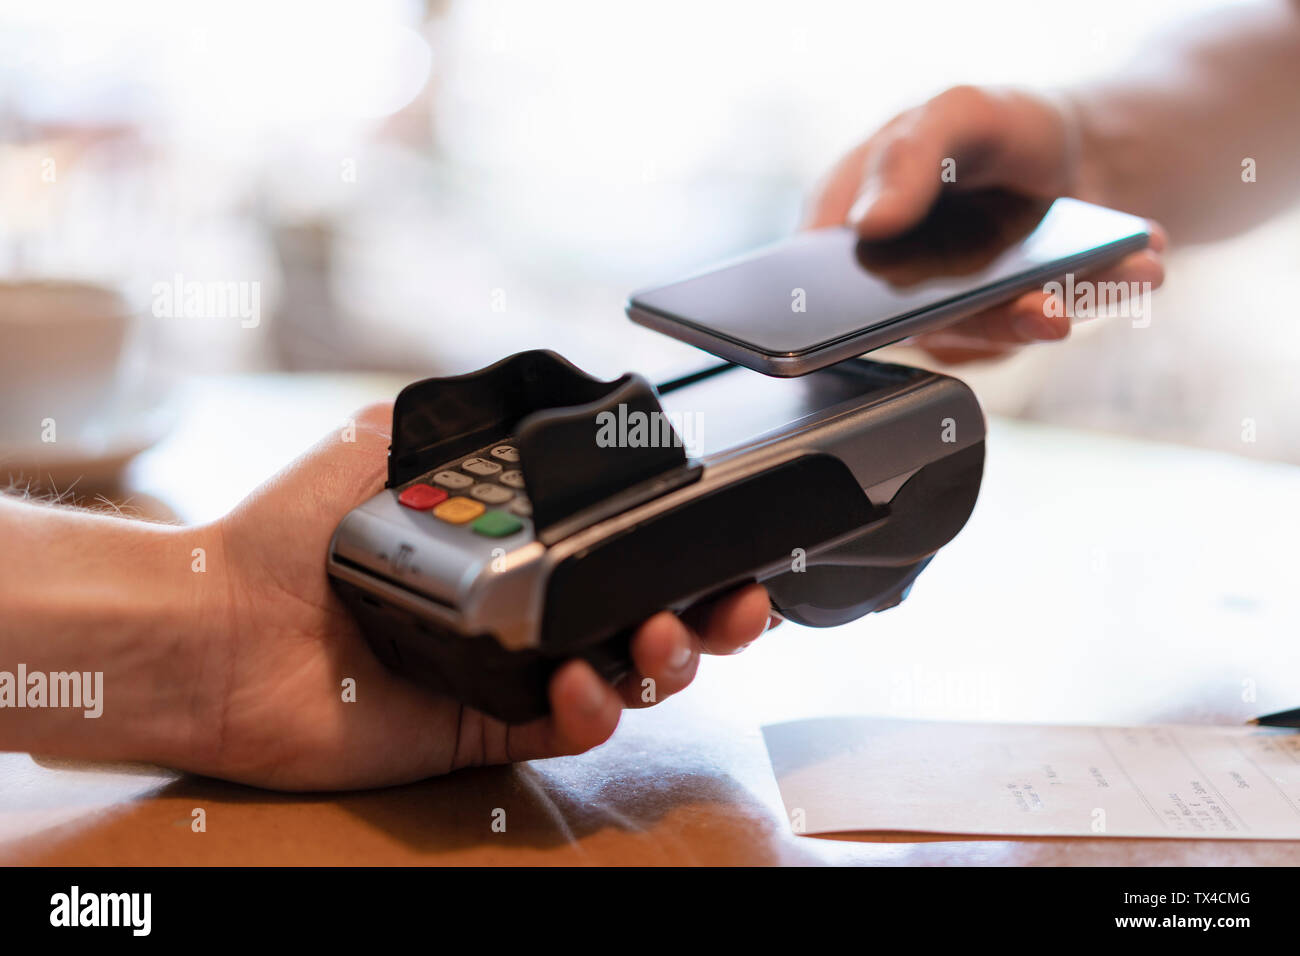 Das kontaktlose Bezahlen mit Smartphone, close-up Stockfoto